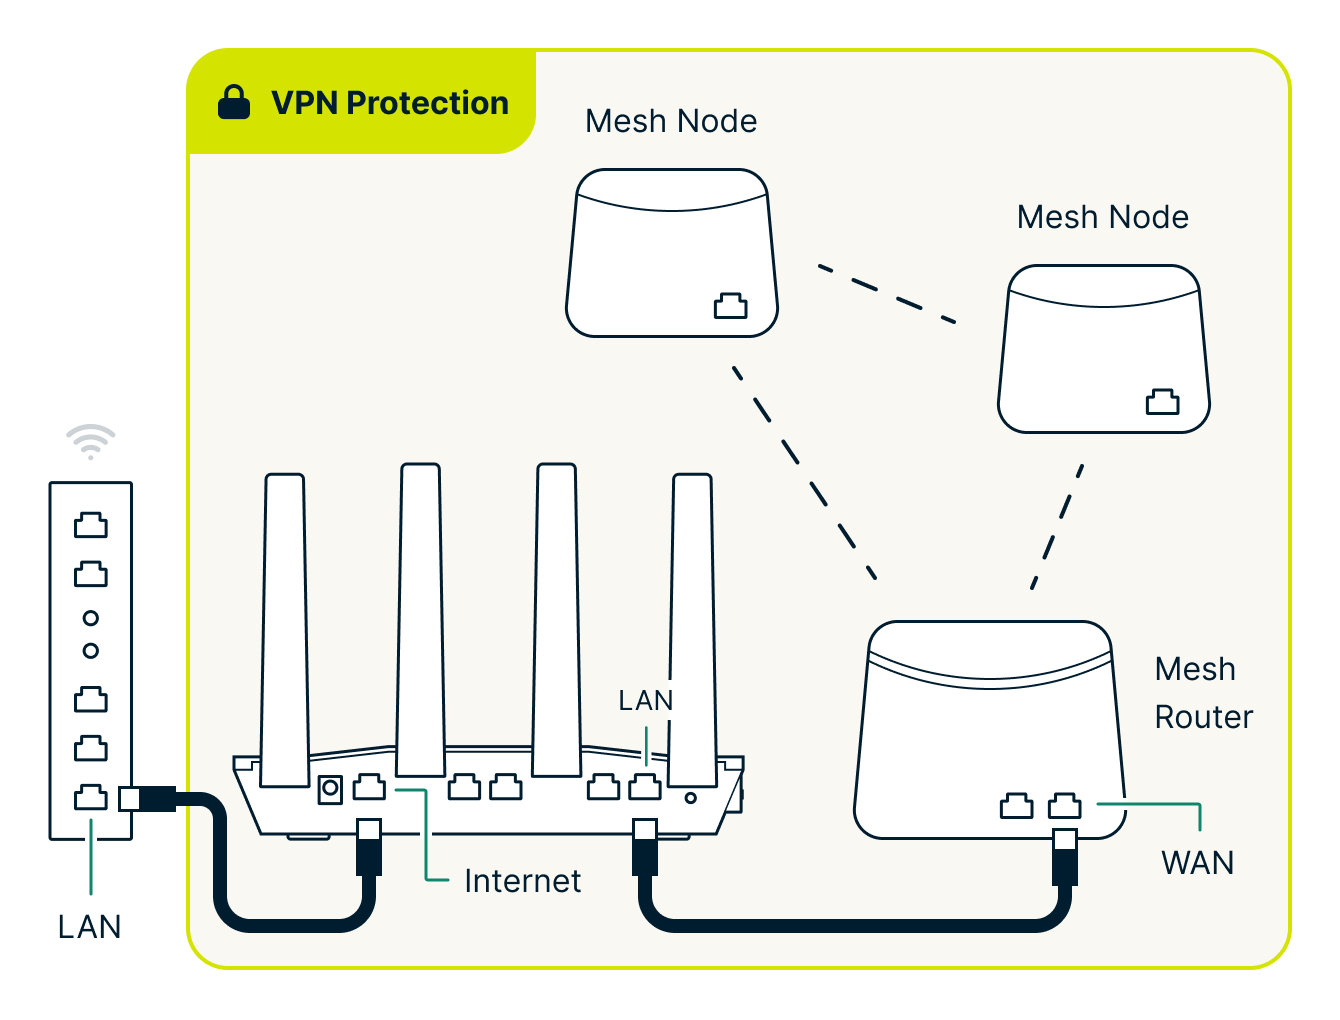 Aircove conectado à lan do roteador do ISP, protegendo toda a rede